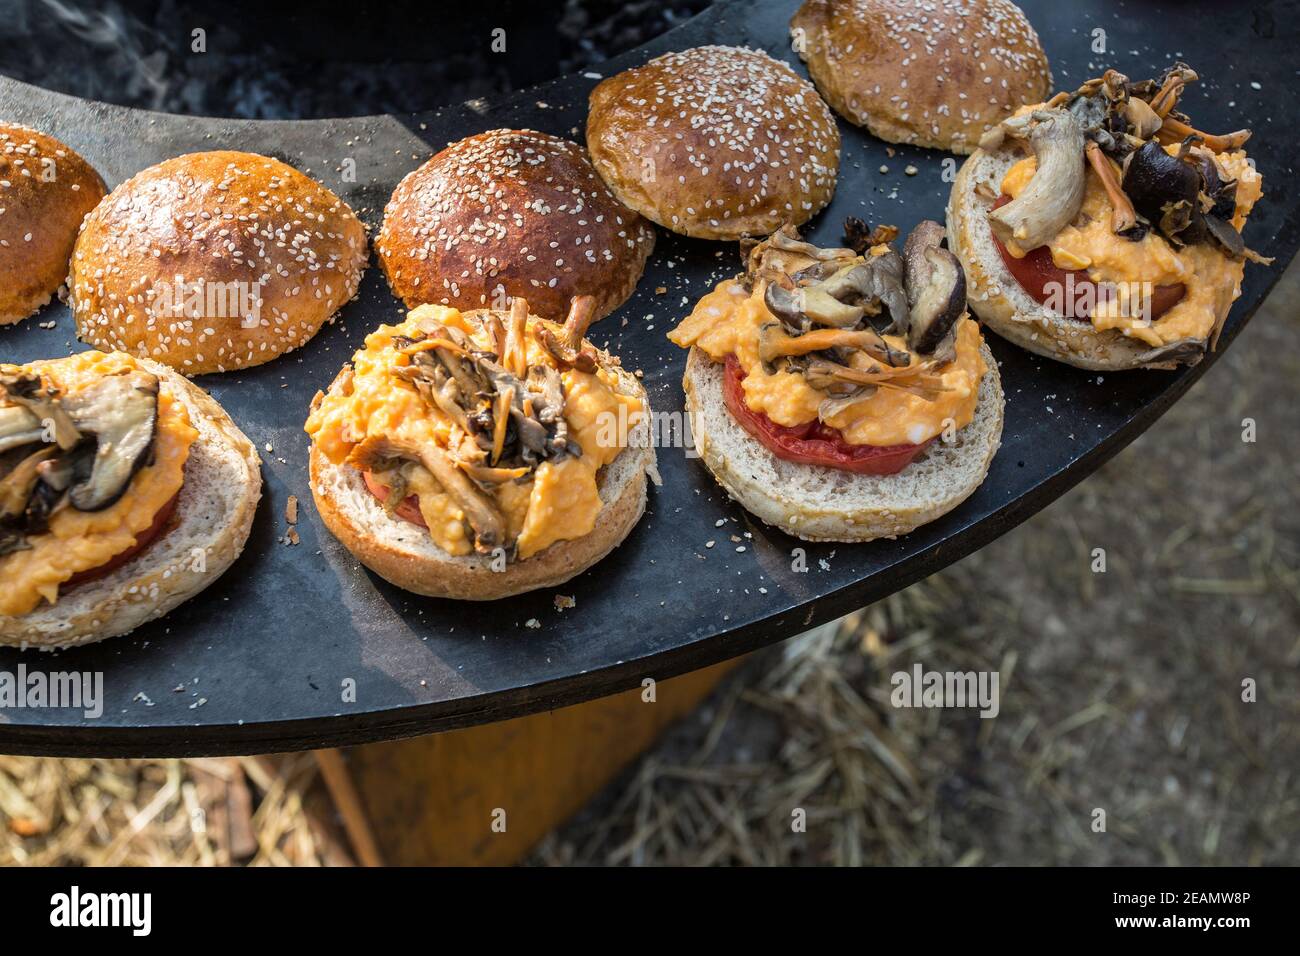 Outdoor breakfast with ,tomato ,mushroom,egg omelette burger. Stock Photo